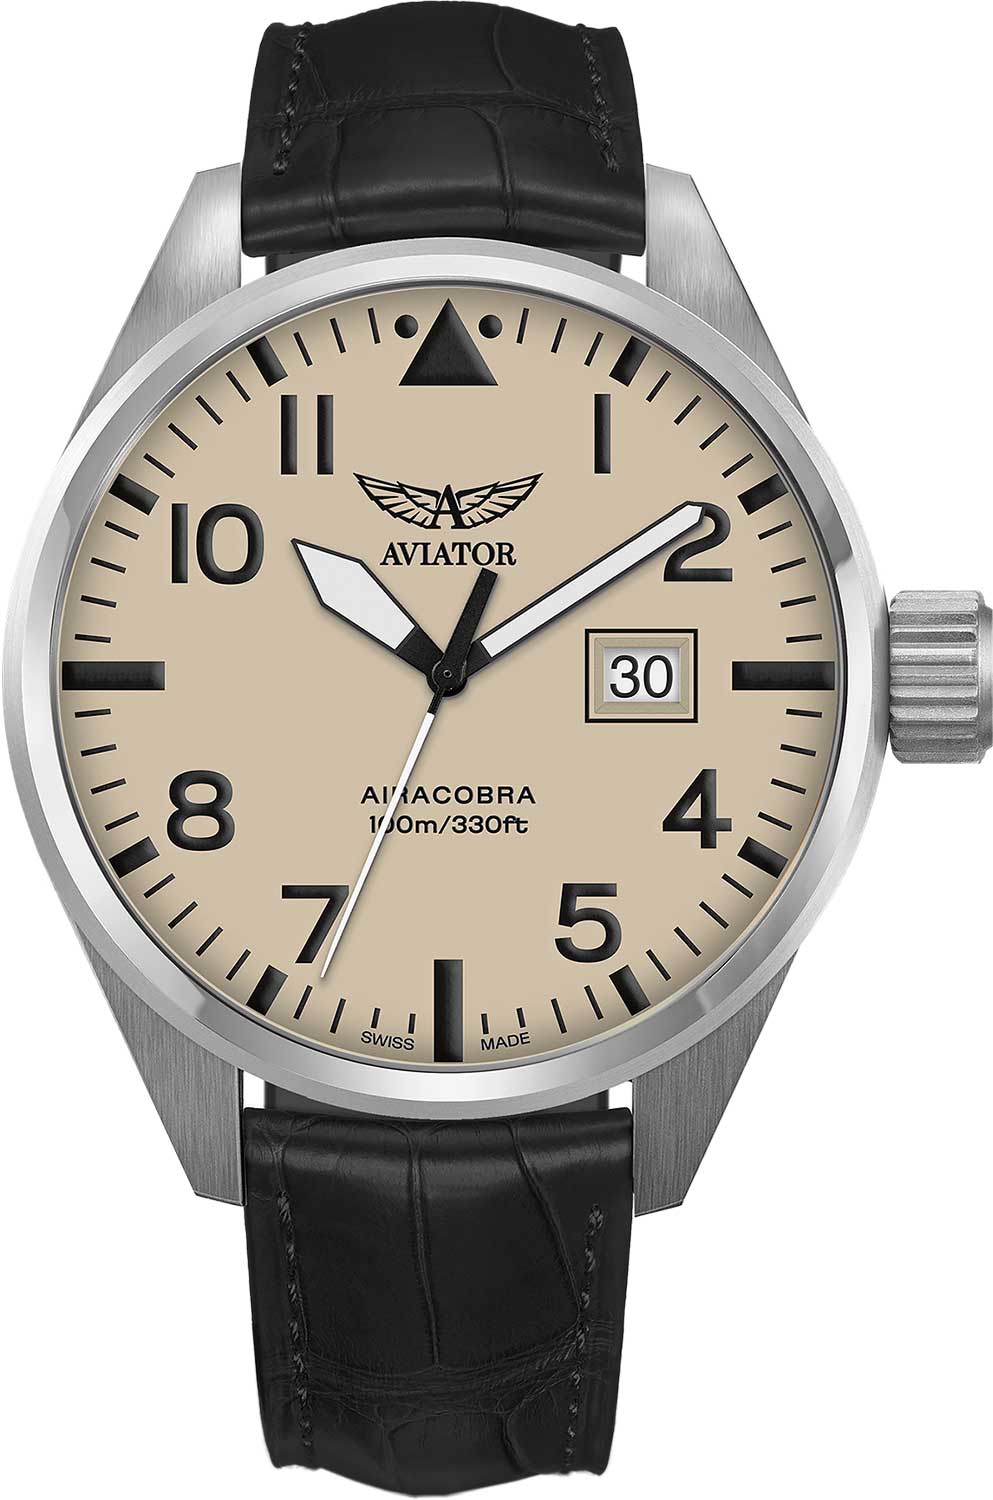 Наручные часы Aviator V.1.22.0.190.4 — купить в интернет-магазине AllTime.ru по лучшей цене, фото, характеристики, инструкция, описание